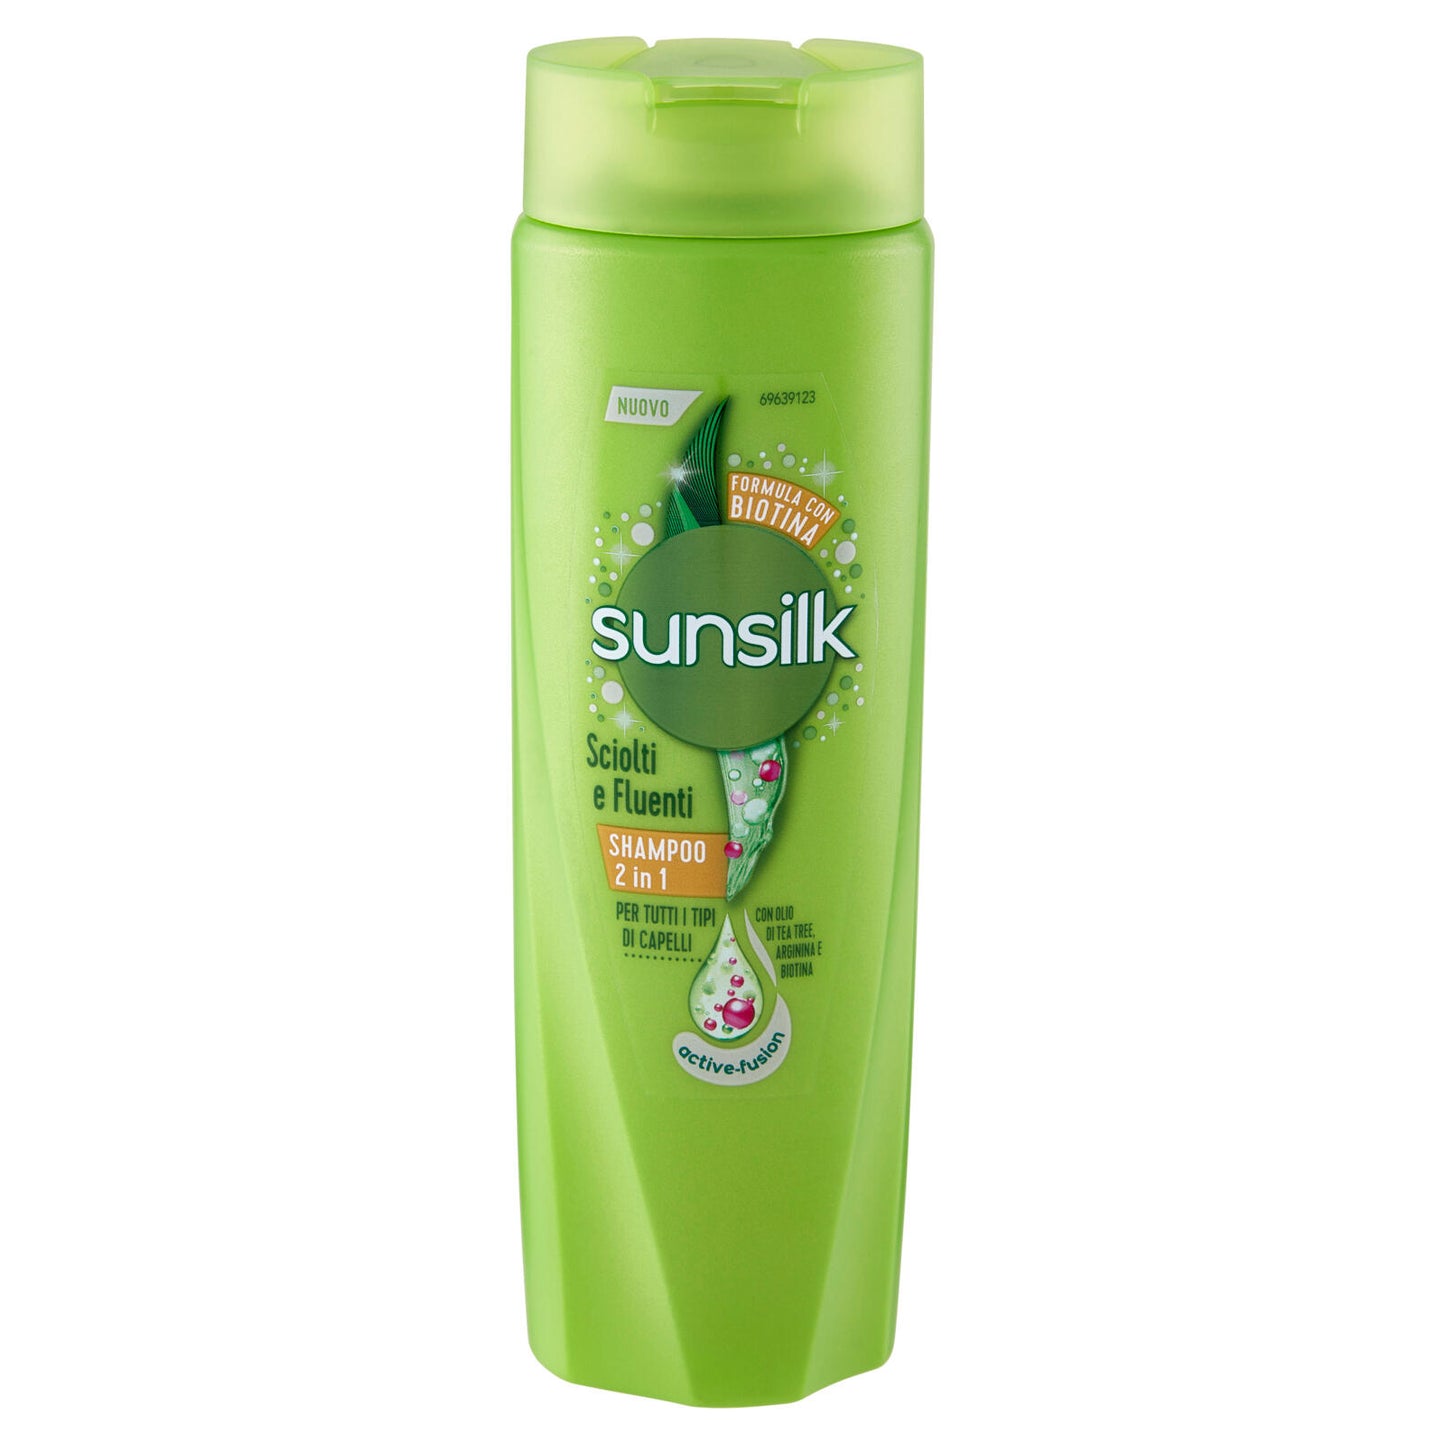 sunsilk Sciolti e Fluenti Shampoo 2in1 per tutti i Tipi di Capelli 250 mL